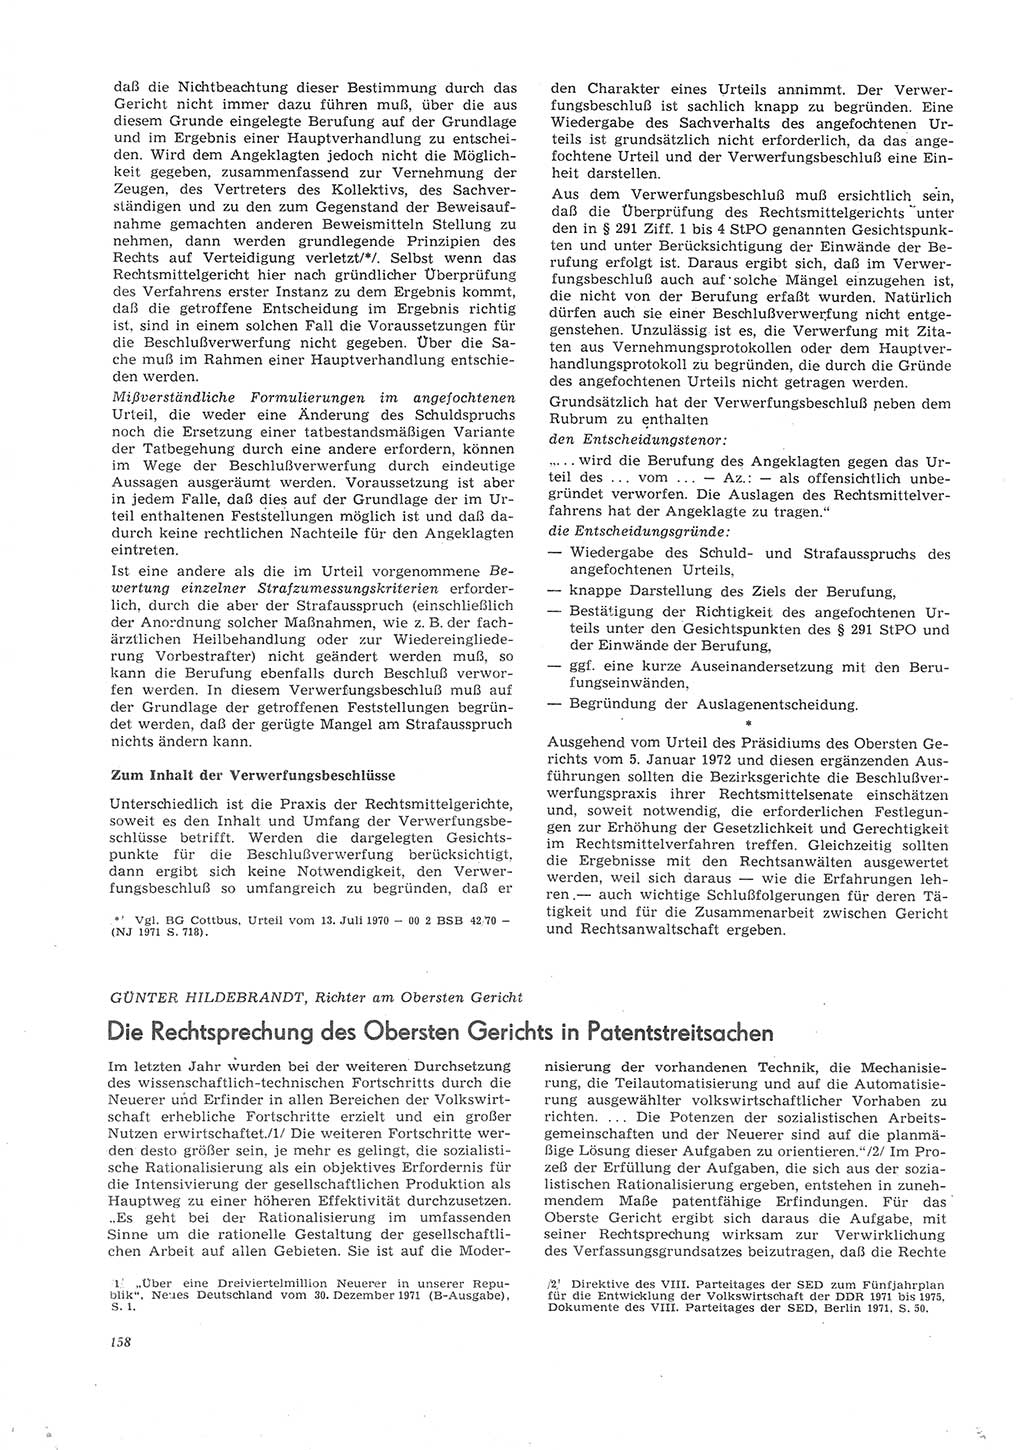 Neue Justiz (NJ), Zeitschrift für Recht und Rechtswissenschaft [Deutsche Demokratische Republik (DDR)], 26. Jahrgang 1972, Seite 158 (NJ DDR 1972, S. 158)